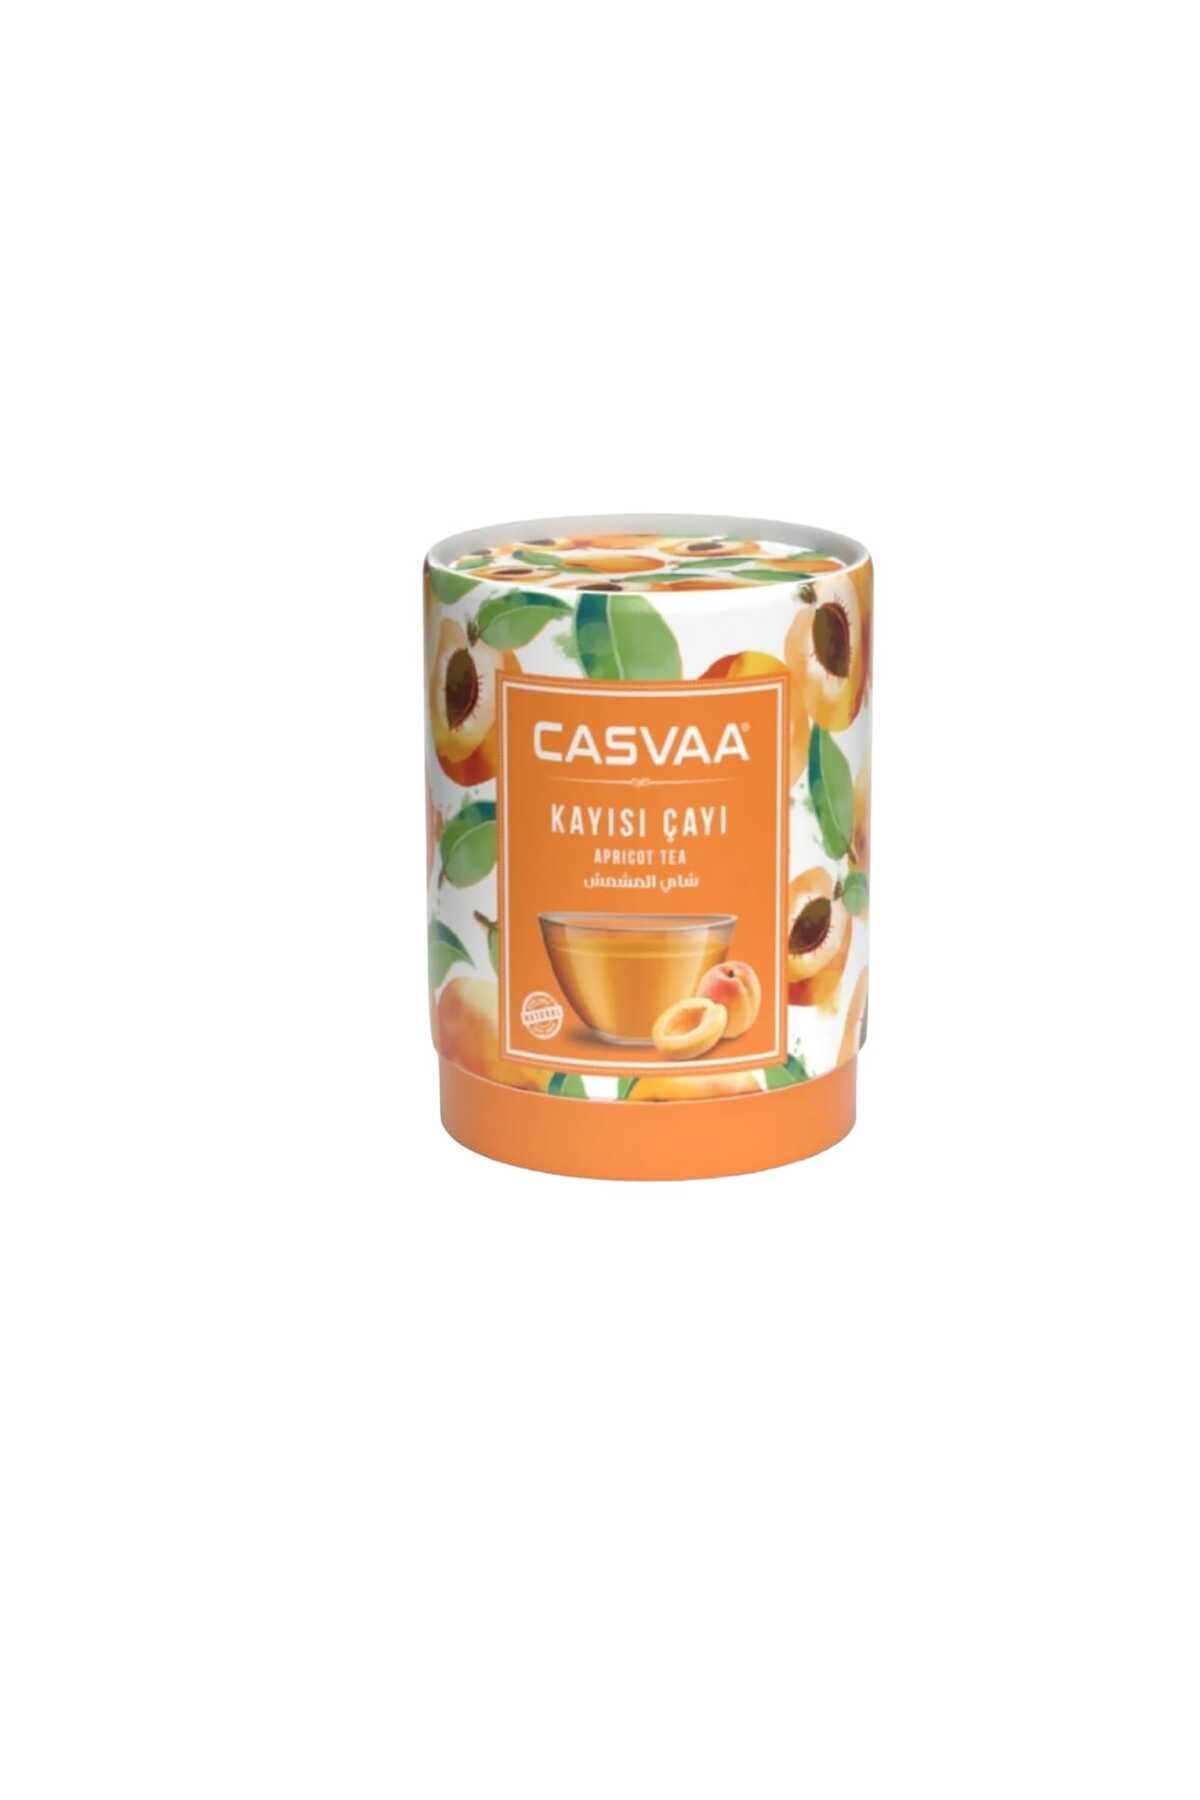 CASVAA COFFE Casvaa Kayısı Çayı 200 gr